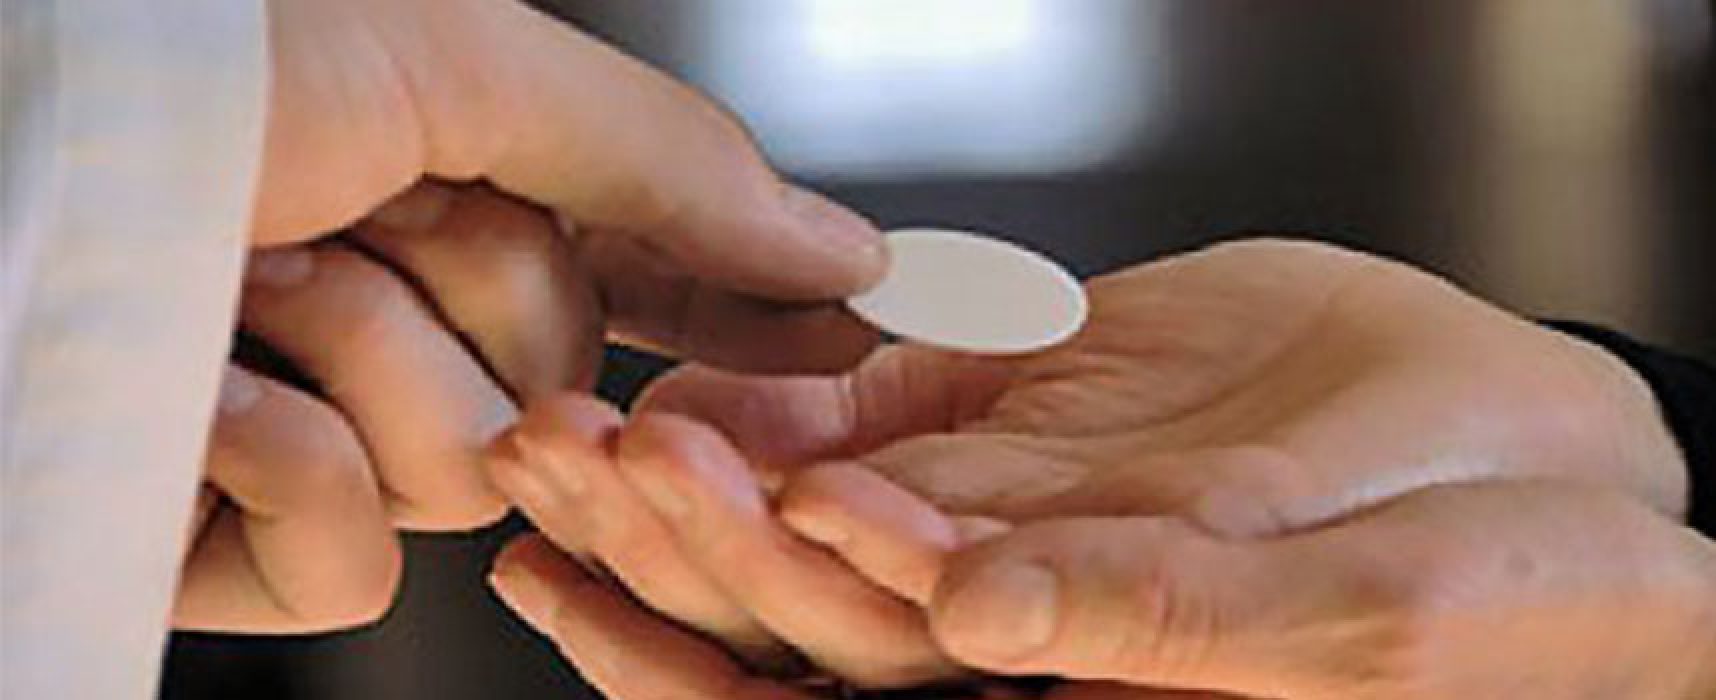 Decreto dell’Arcivescovo: distribuzione comunione senza guanti, sposi senza mascherina